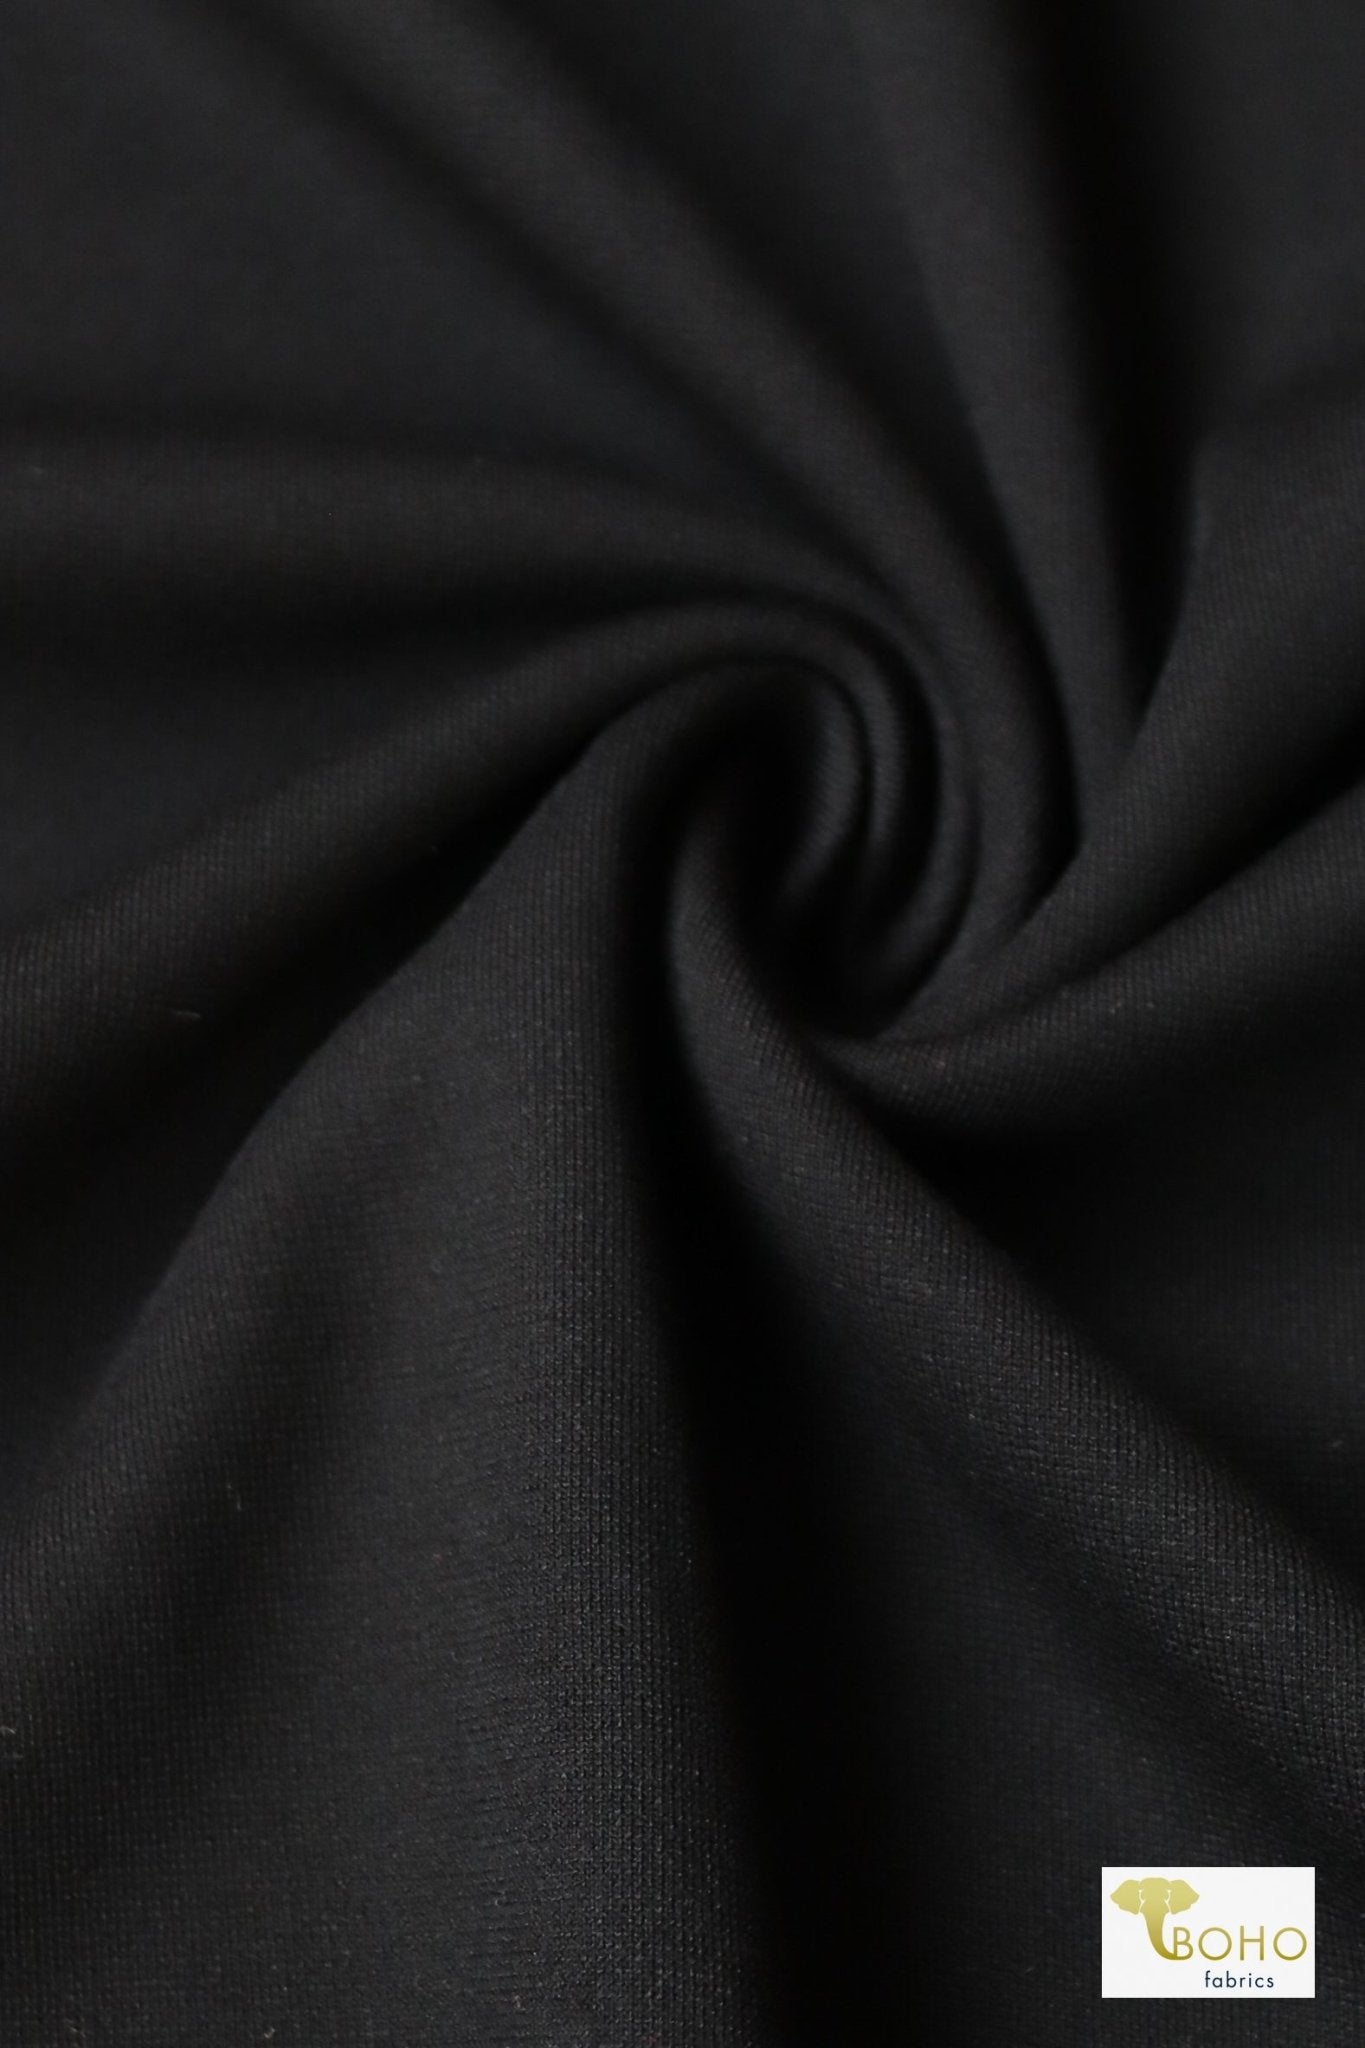 Heavy Black Ponte Knit. Designer - High Quality. - Boho Fabrics